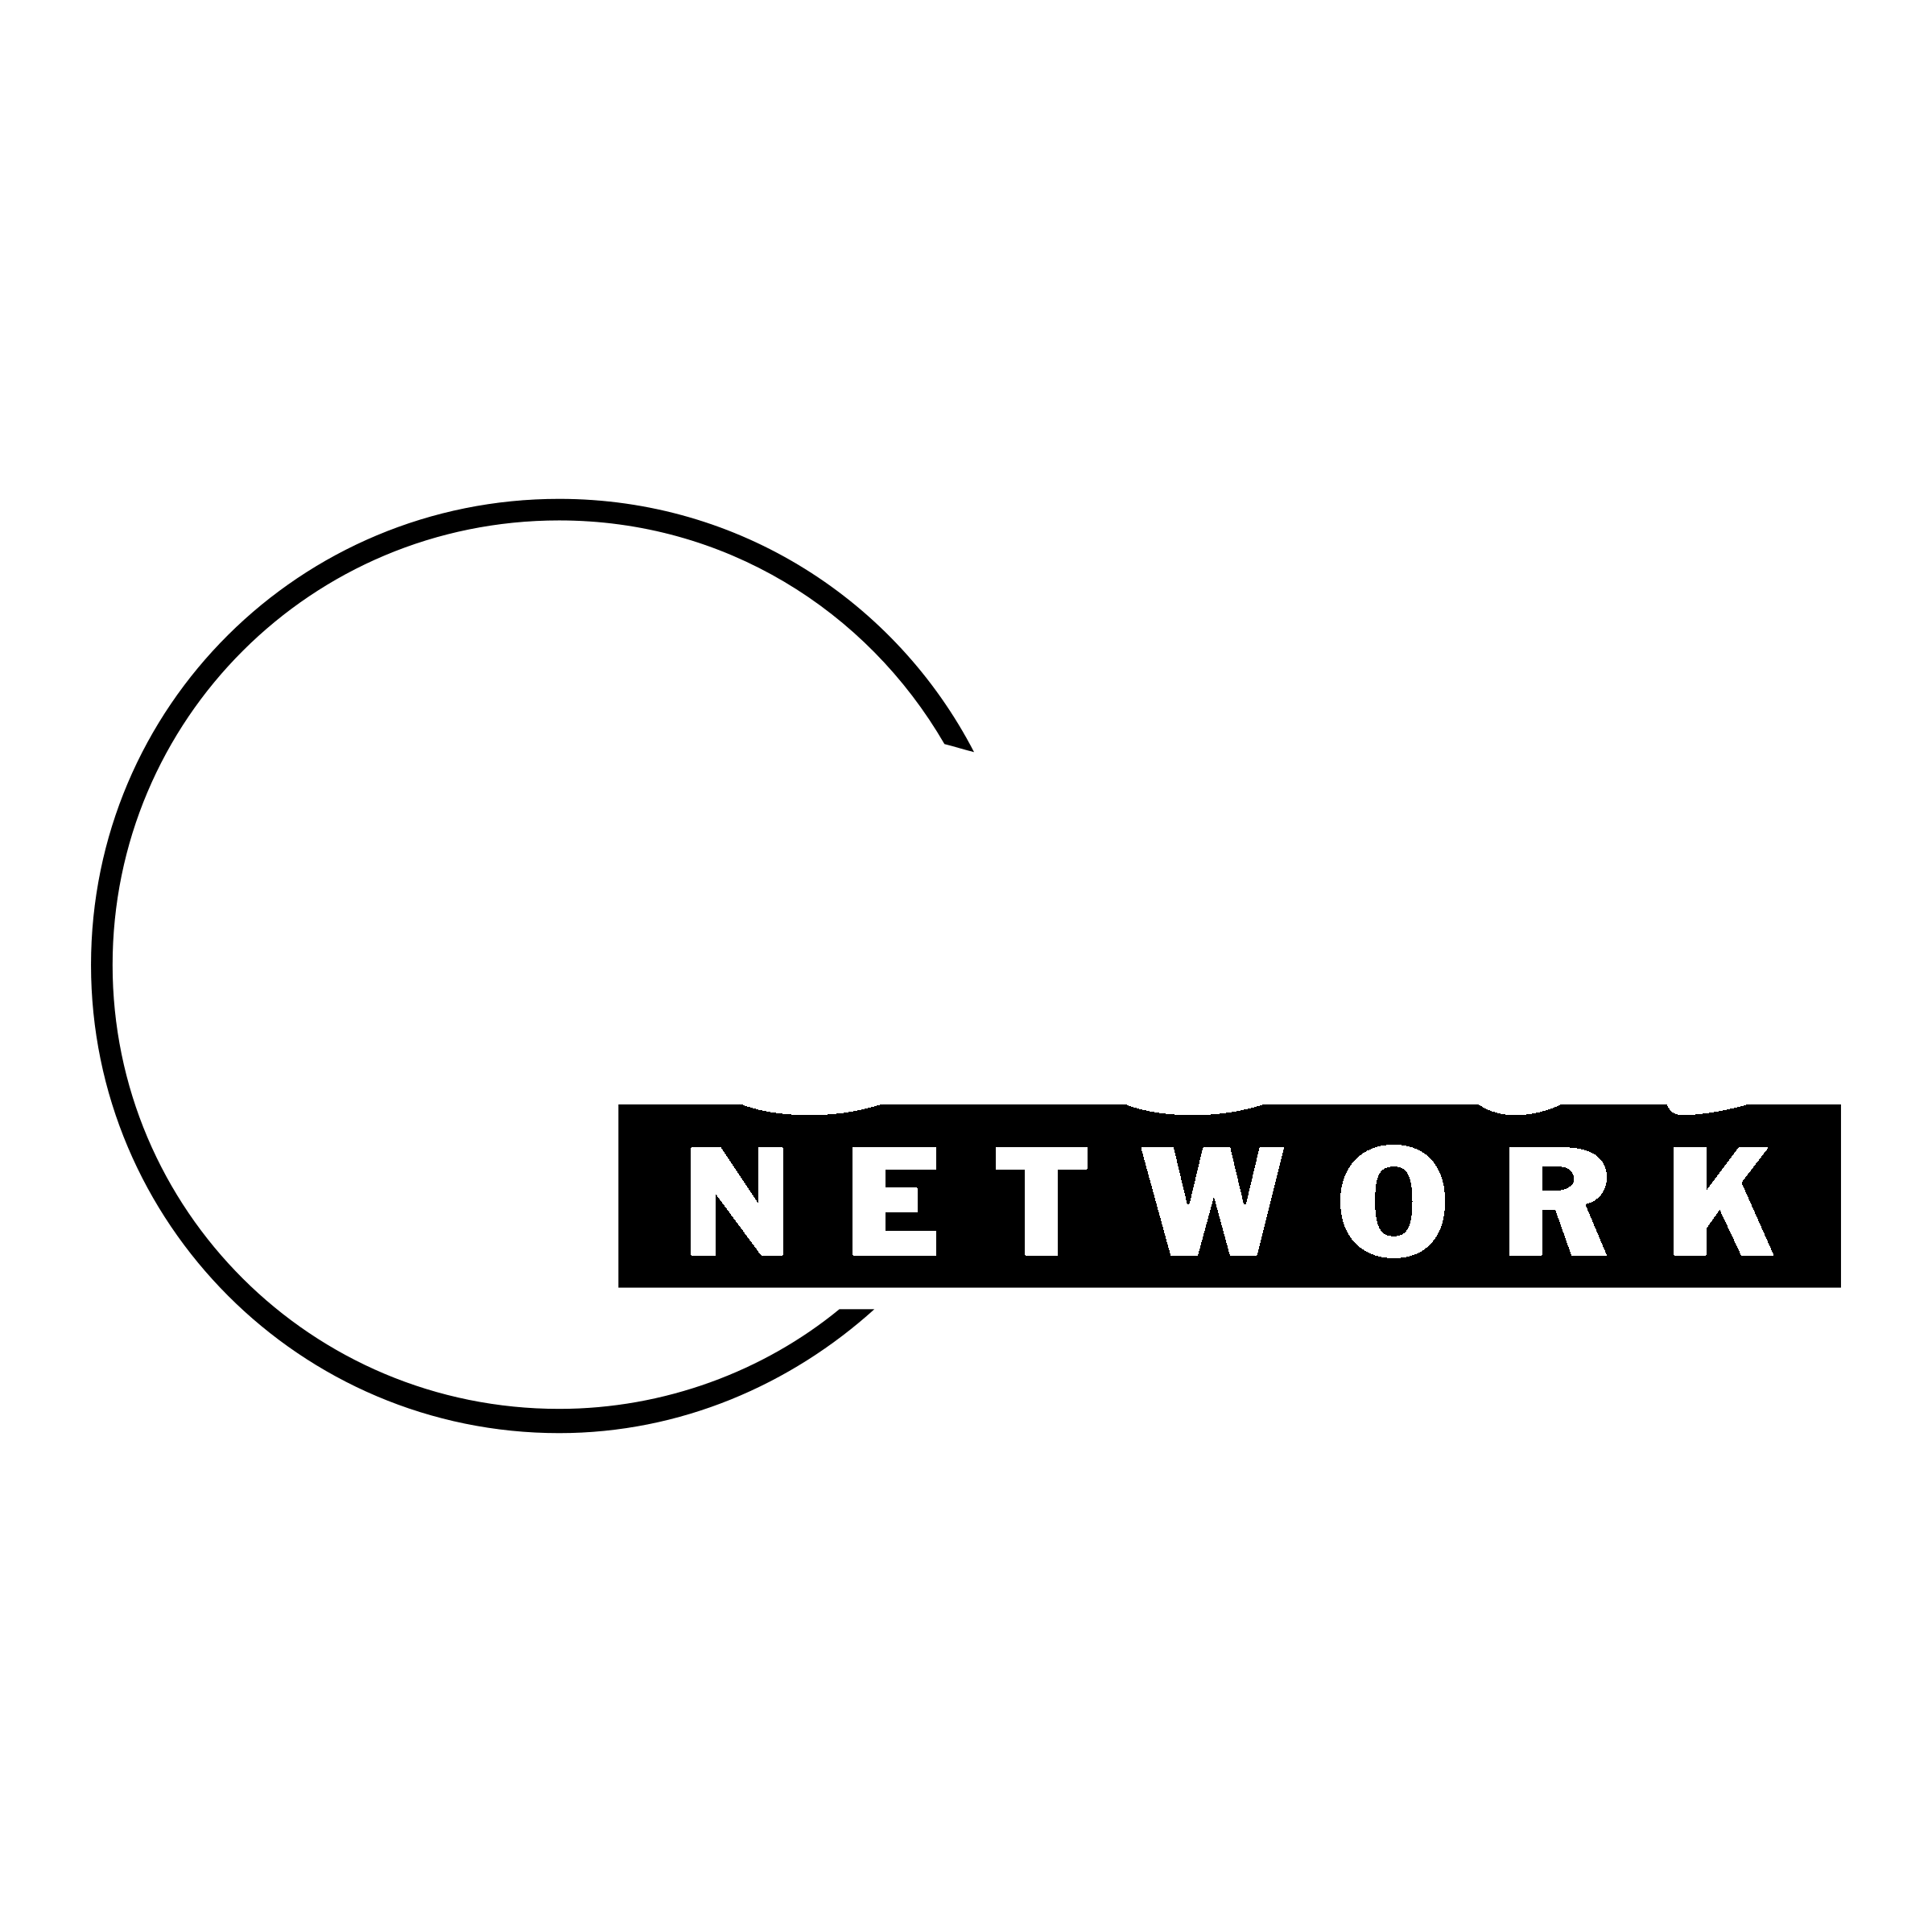 Food Network Logo - Food Network Logo PNG Transparent & SVG Vector - Freebie Supply